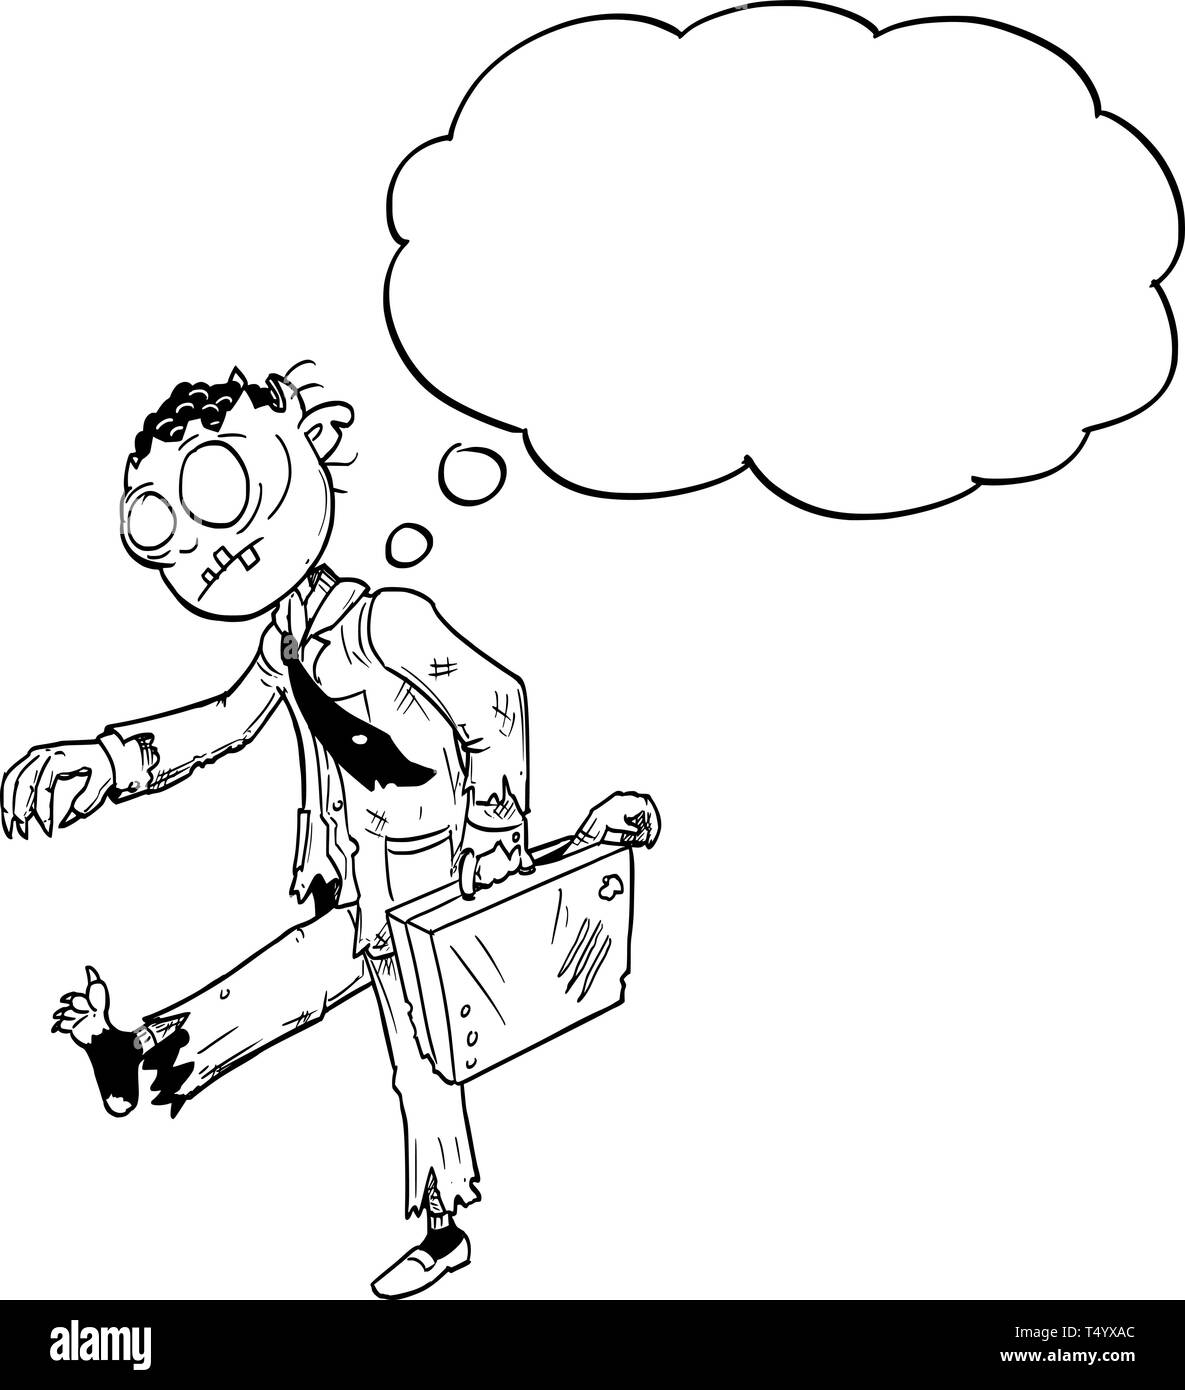 Illustration conceptuelle de dessin animé de crazy Halloween monster man zombie avec costume et avec porte-documents et discours vide ou texte bulle ballon. Illustration de Vecteur